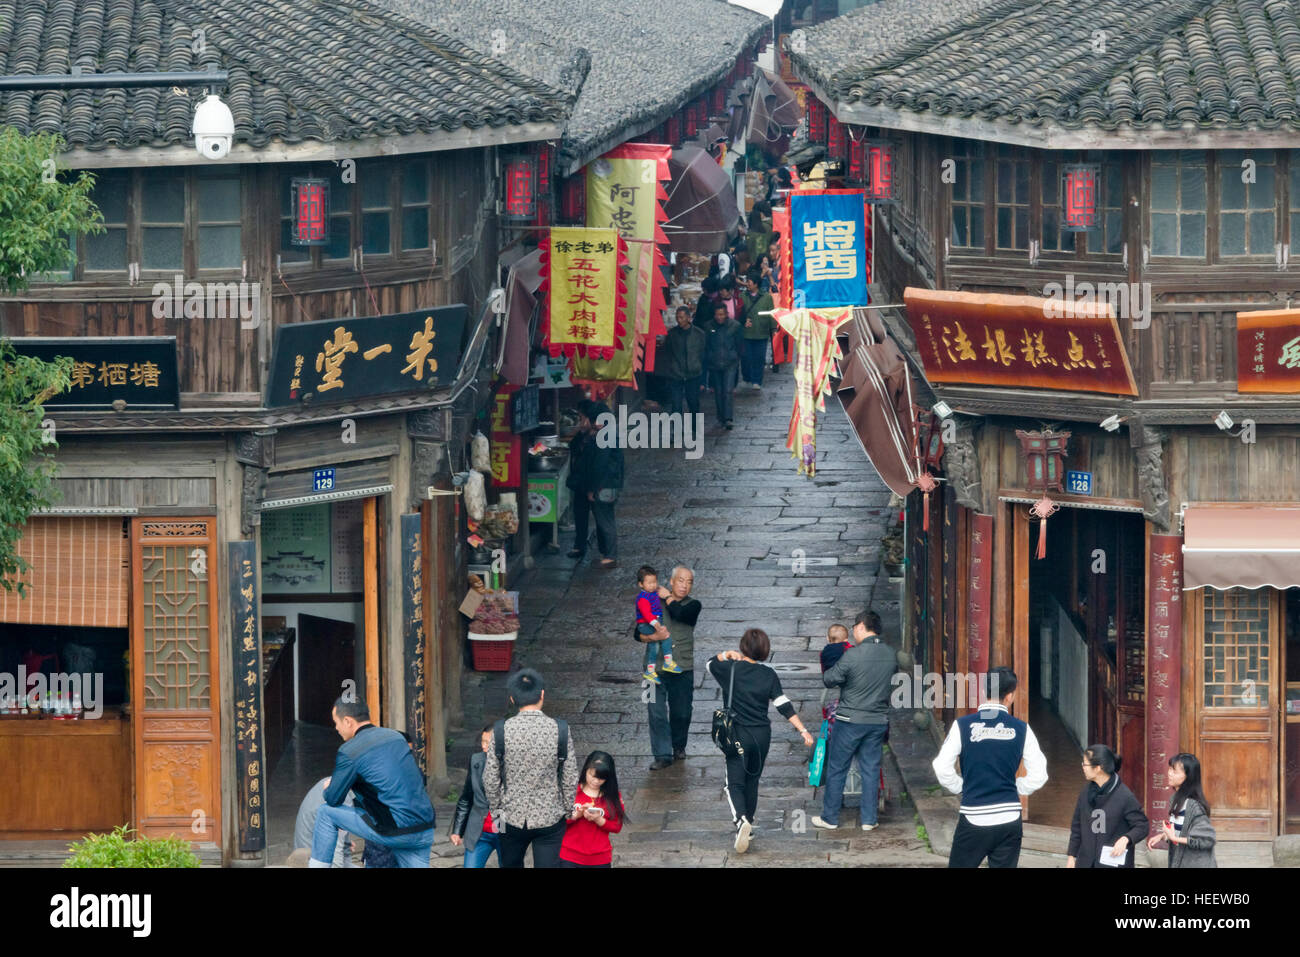 Traditional houses in Tangqi Ancient Town, Hangzhou, Zhejiang Province, China Stock Photo